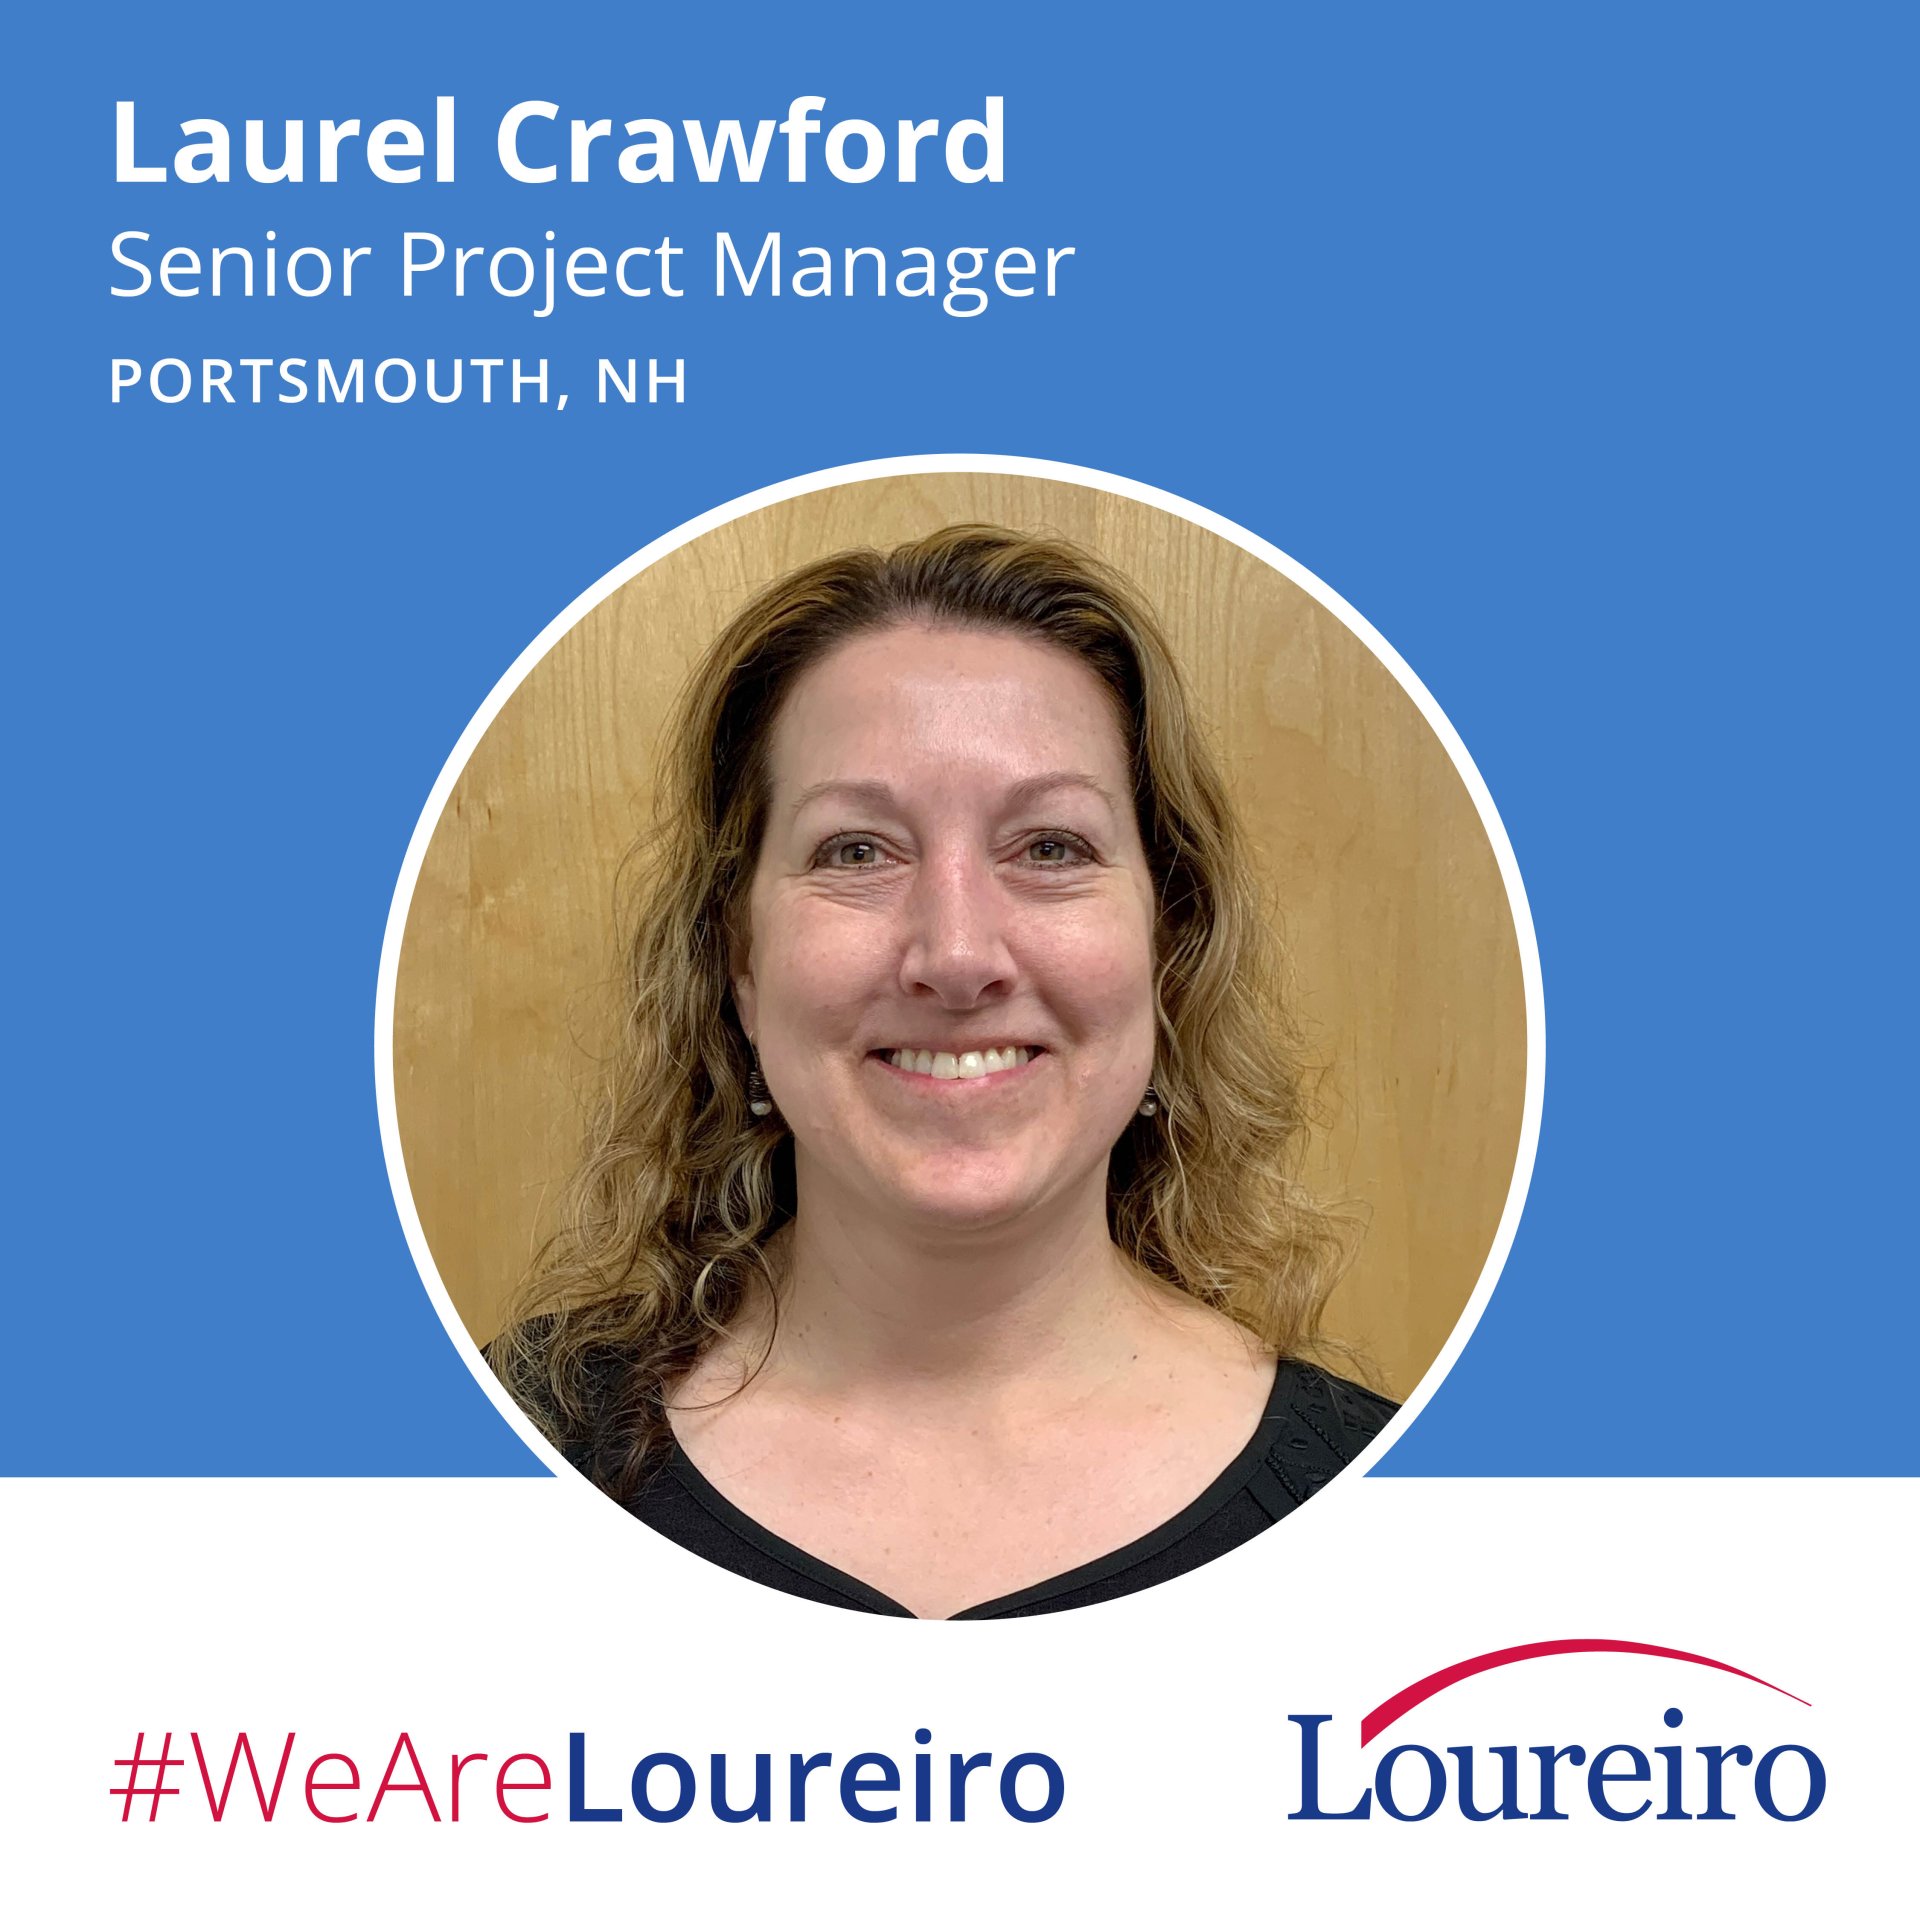 We Are Loureiro: Laurel Crawford